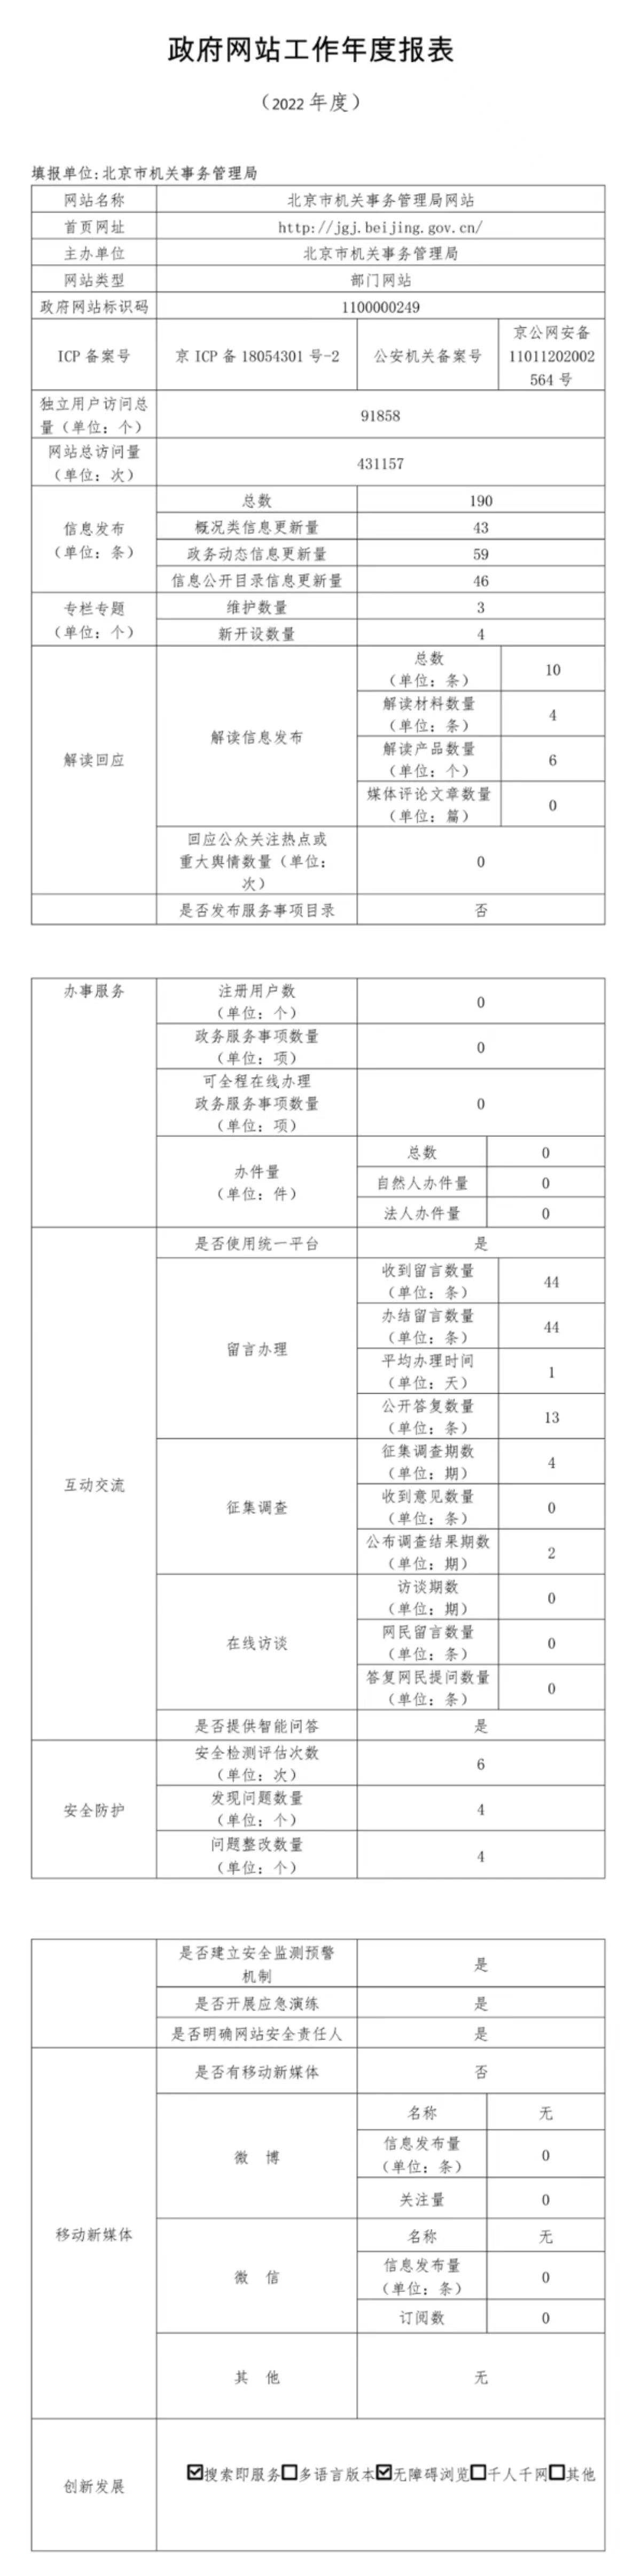 北京市機關事務管理局2022年政府網站年度工作報表